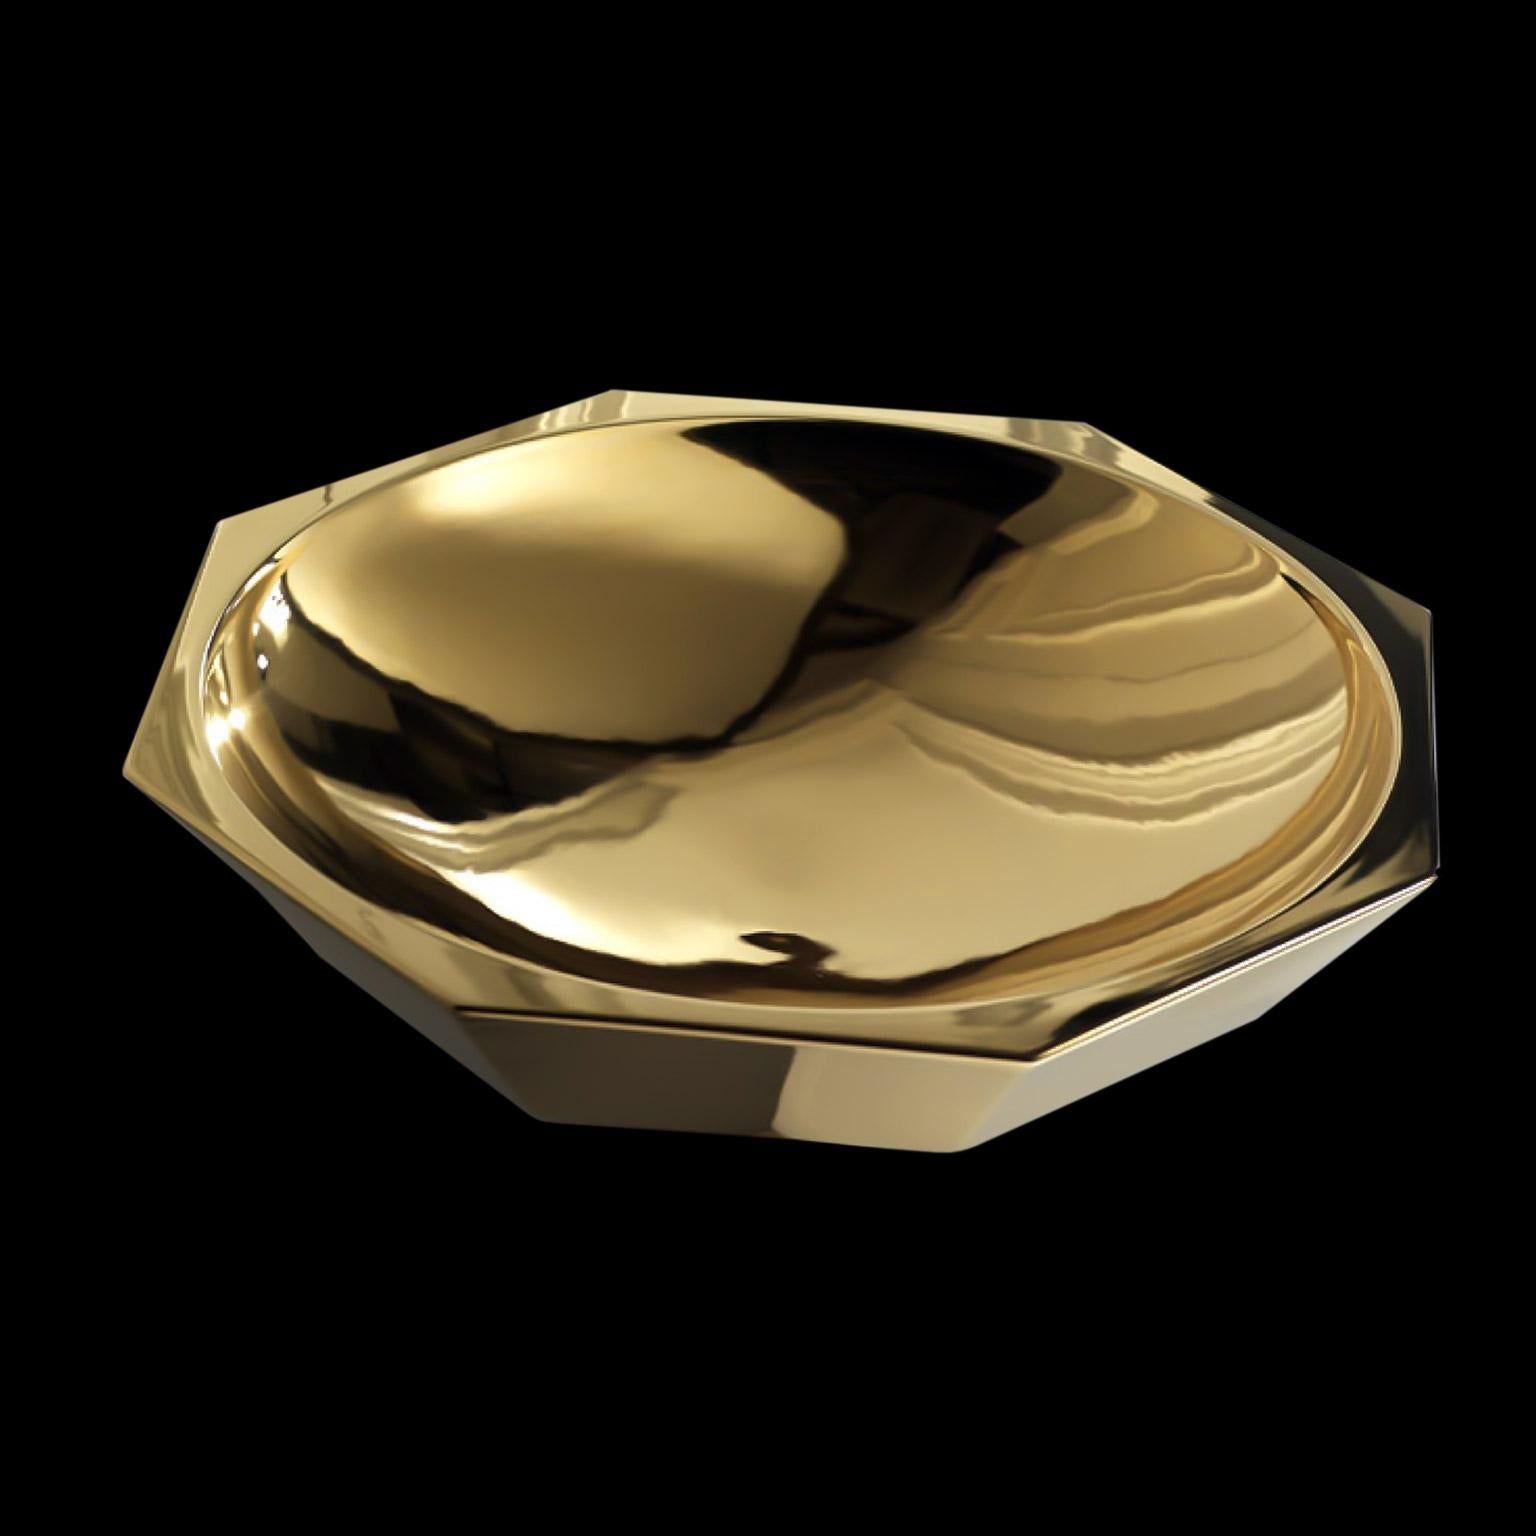 Ceramic bowl, handcrafted in 24-karat gold 
CLIO, code DD011, measures: H. 15.0 cm.. Dm. 60.0 cm.